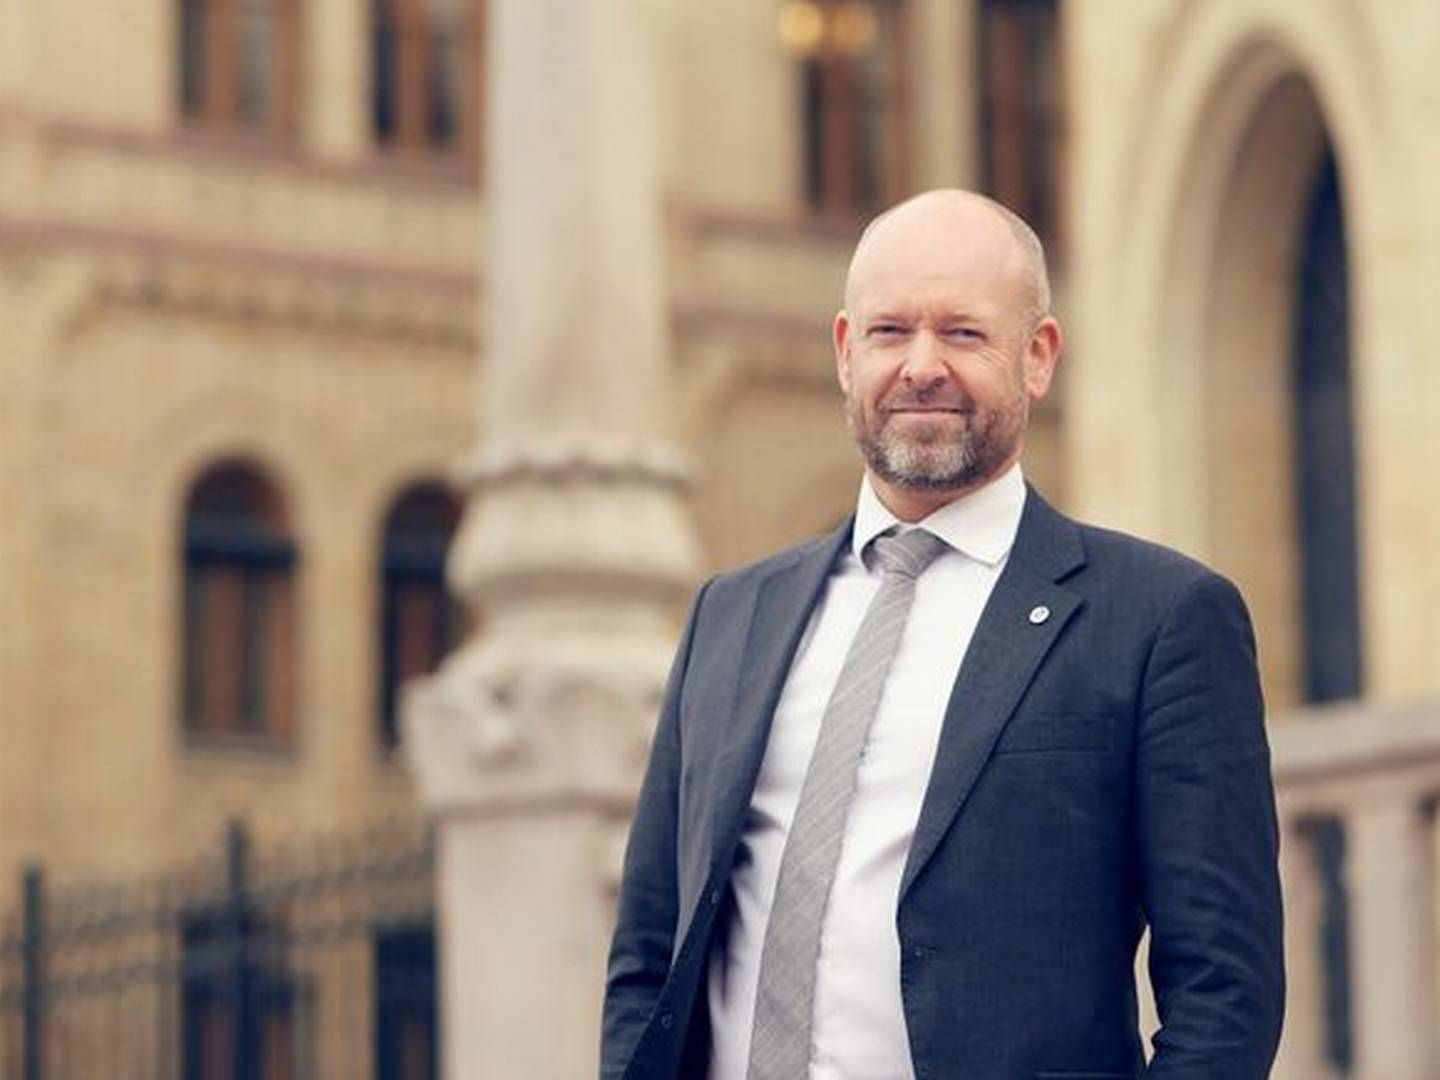 FORNØYD: Administrerende direktør Jørund Rytman er fornøyd med en god rapport fra SMBs juridiske utvalg | Photo: Susanne A. Finnes, SMB Norge